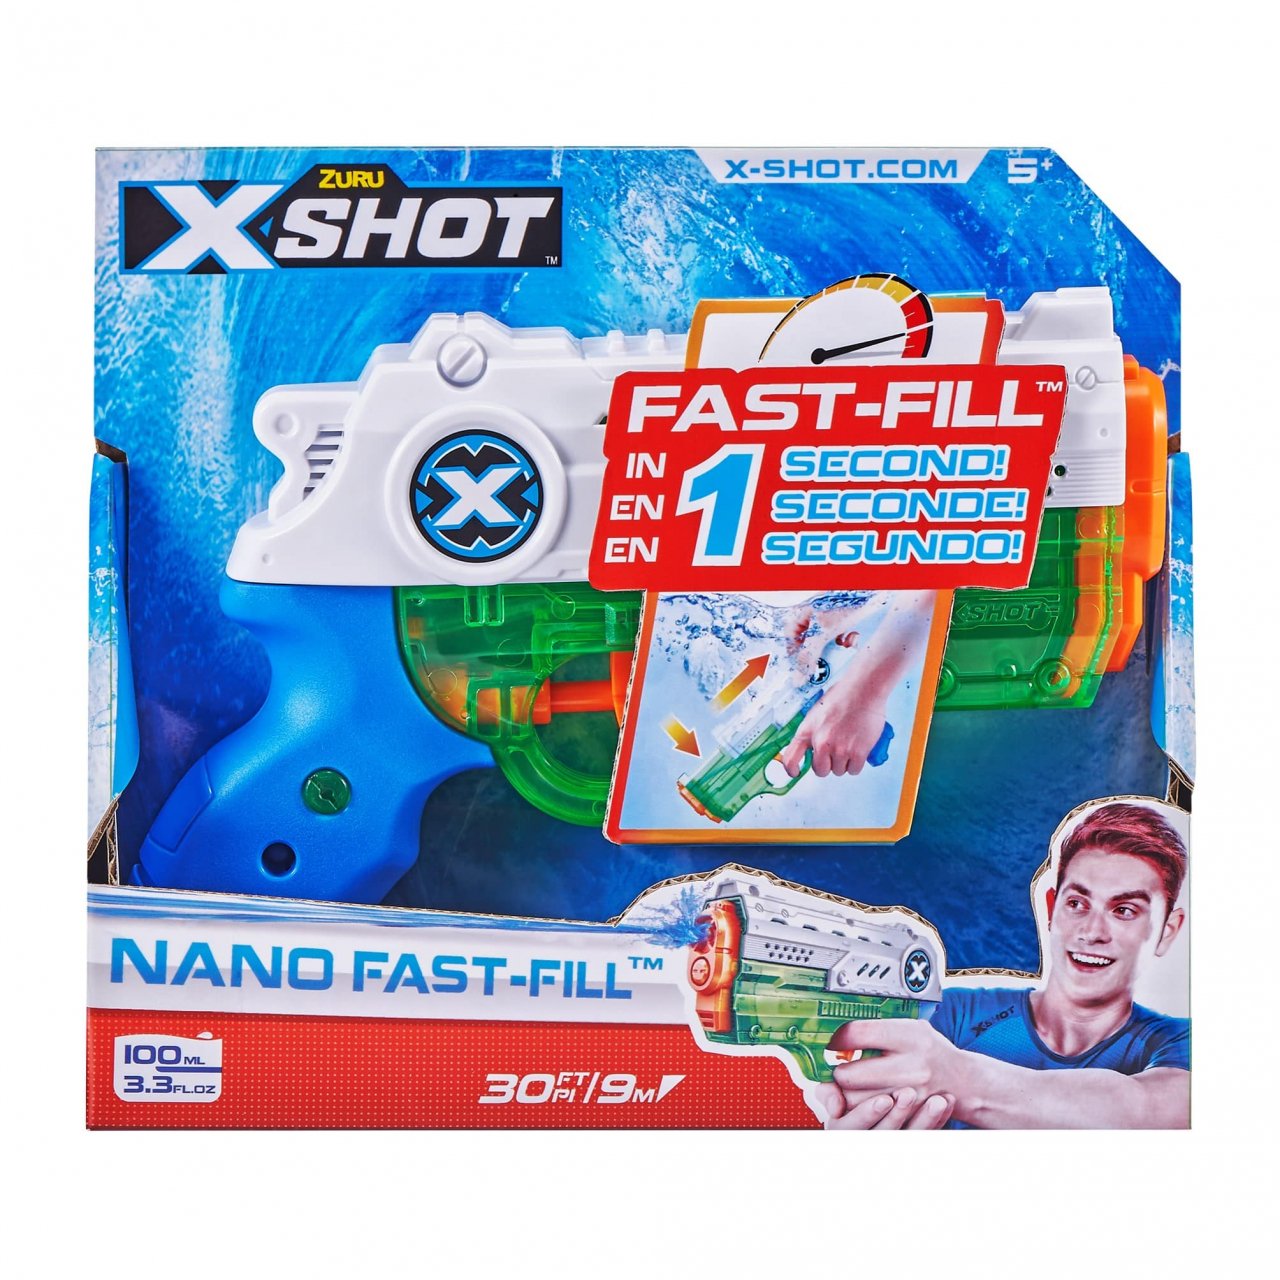 Vandens šautuvas XSHOT Nano Fast-Fill